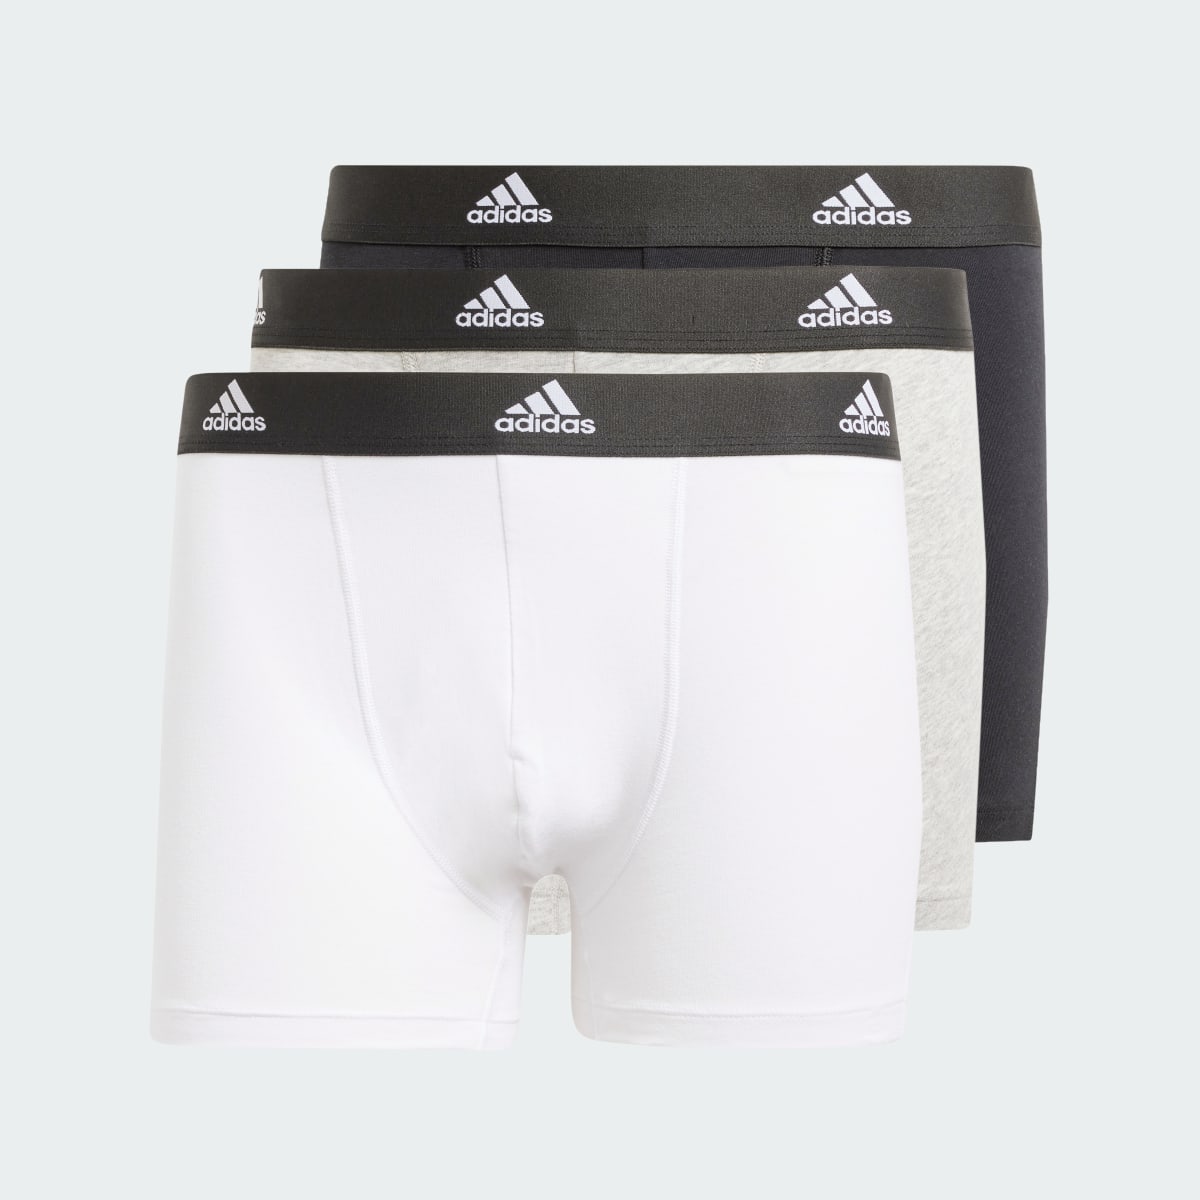 Adidas Active Flex Cotton Boxershorts, 3er-Pack – Unterwäsche. 7